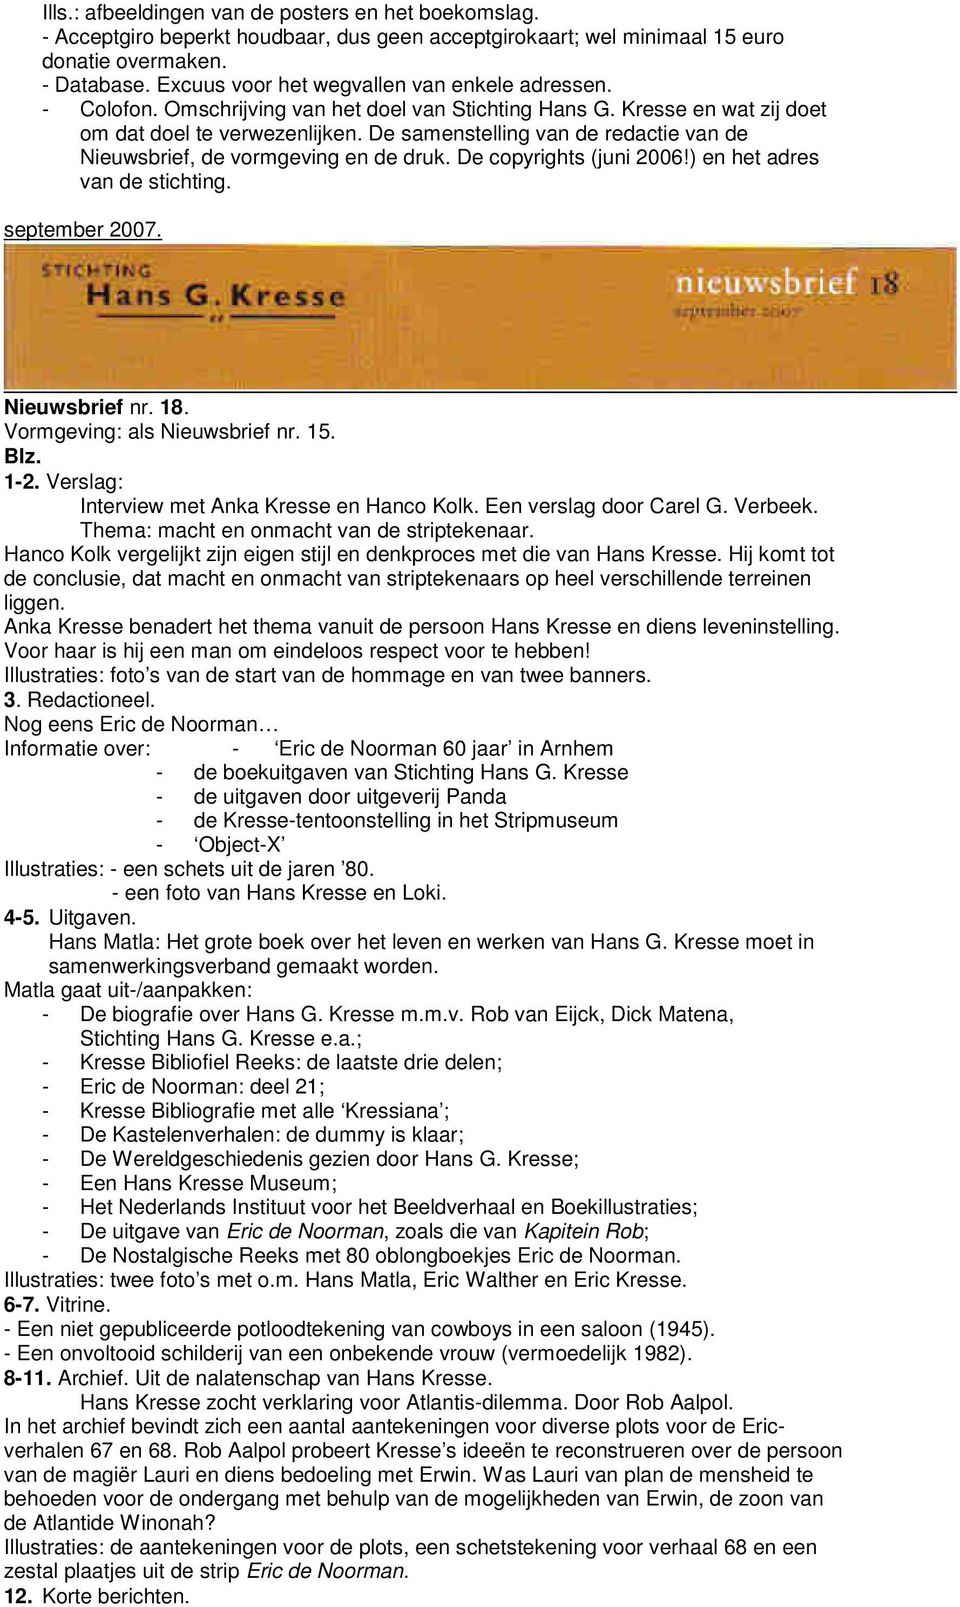 De samenstelling van de redactie van de Nieuwsbrief, de vormgeving en de druk. De copyrights (juni 2006!) en het adres van de stichting. september 2007. Nieuwsbrief nr. 18.